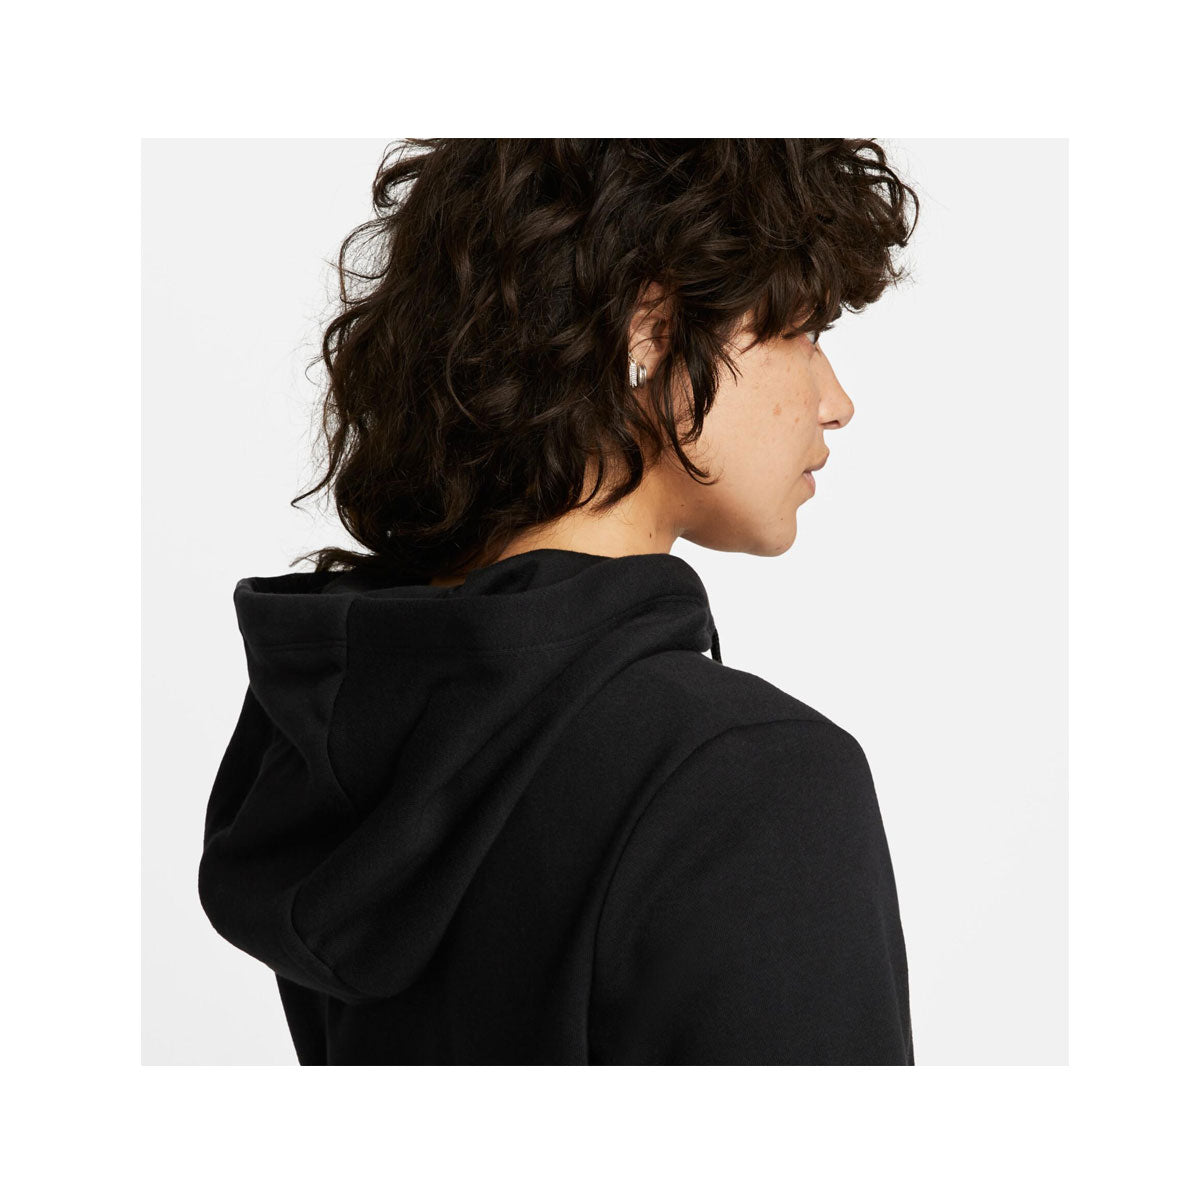 Nike Women's SC Fleece Logo Pullover Hoodie